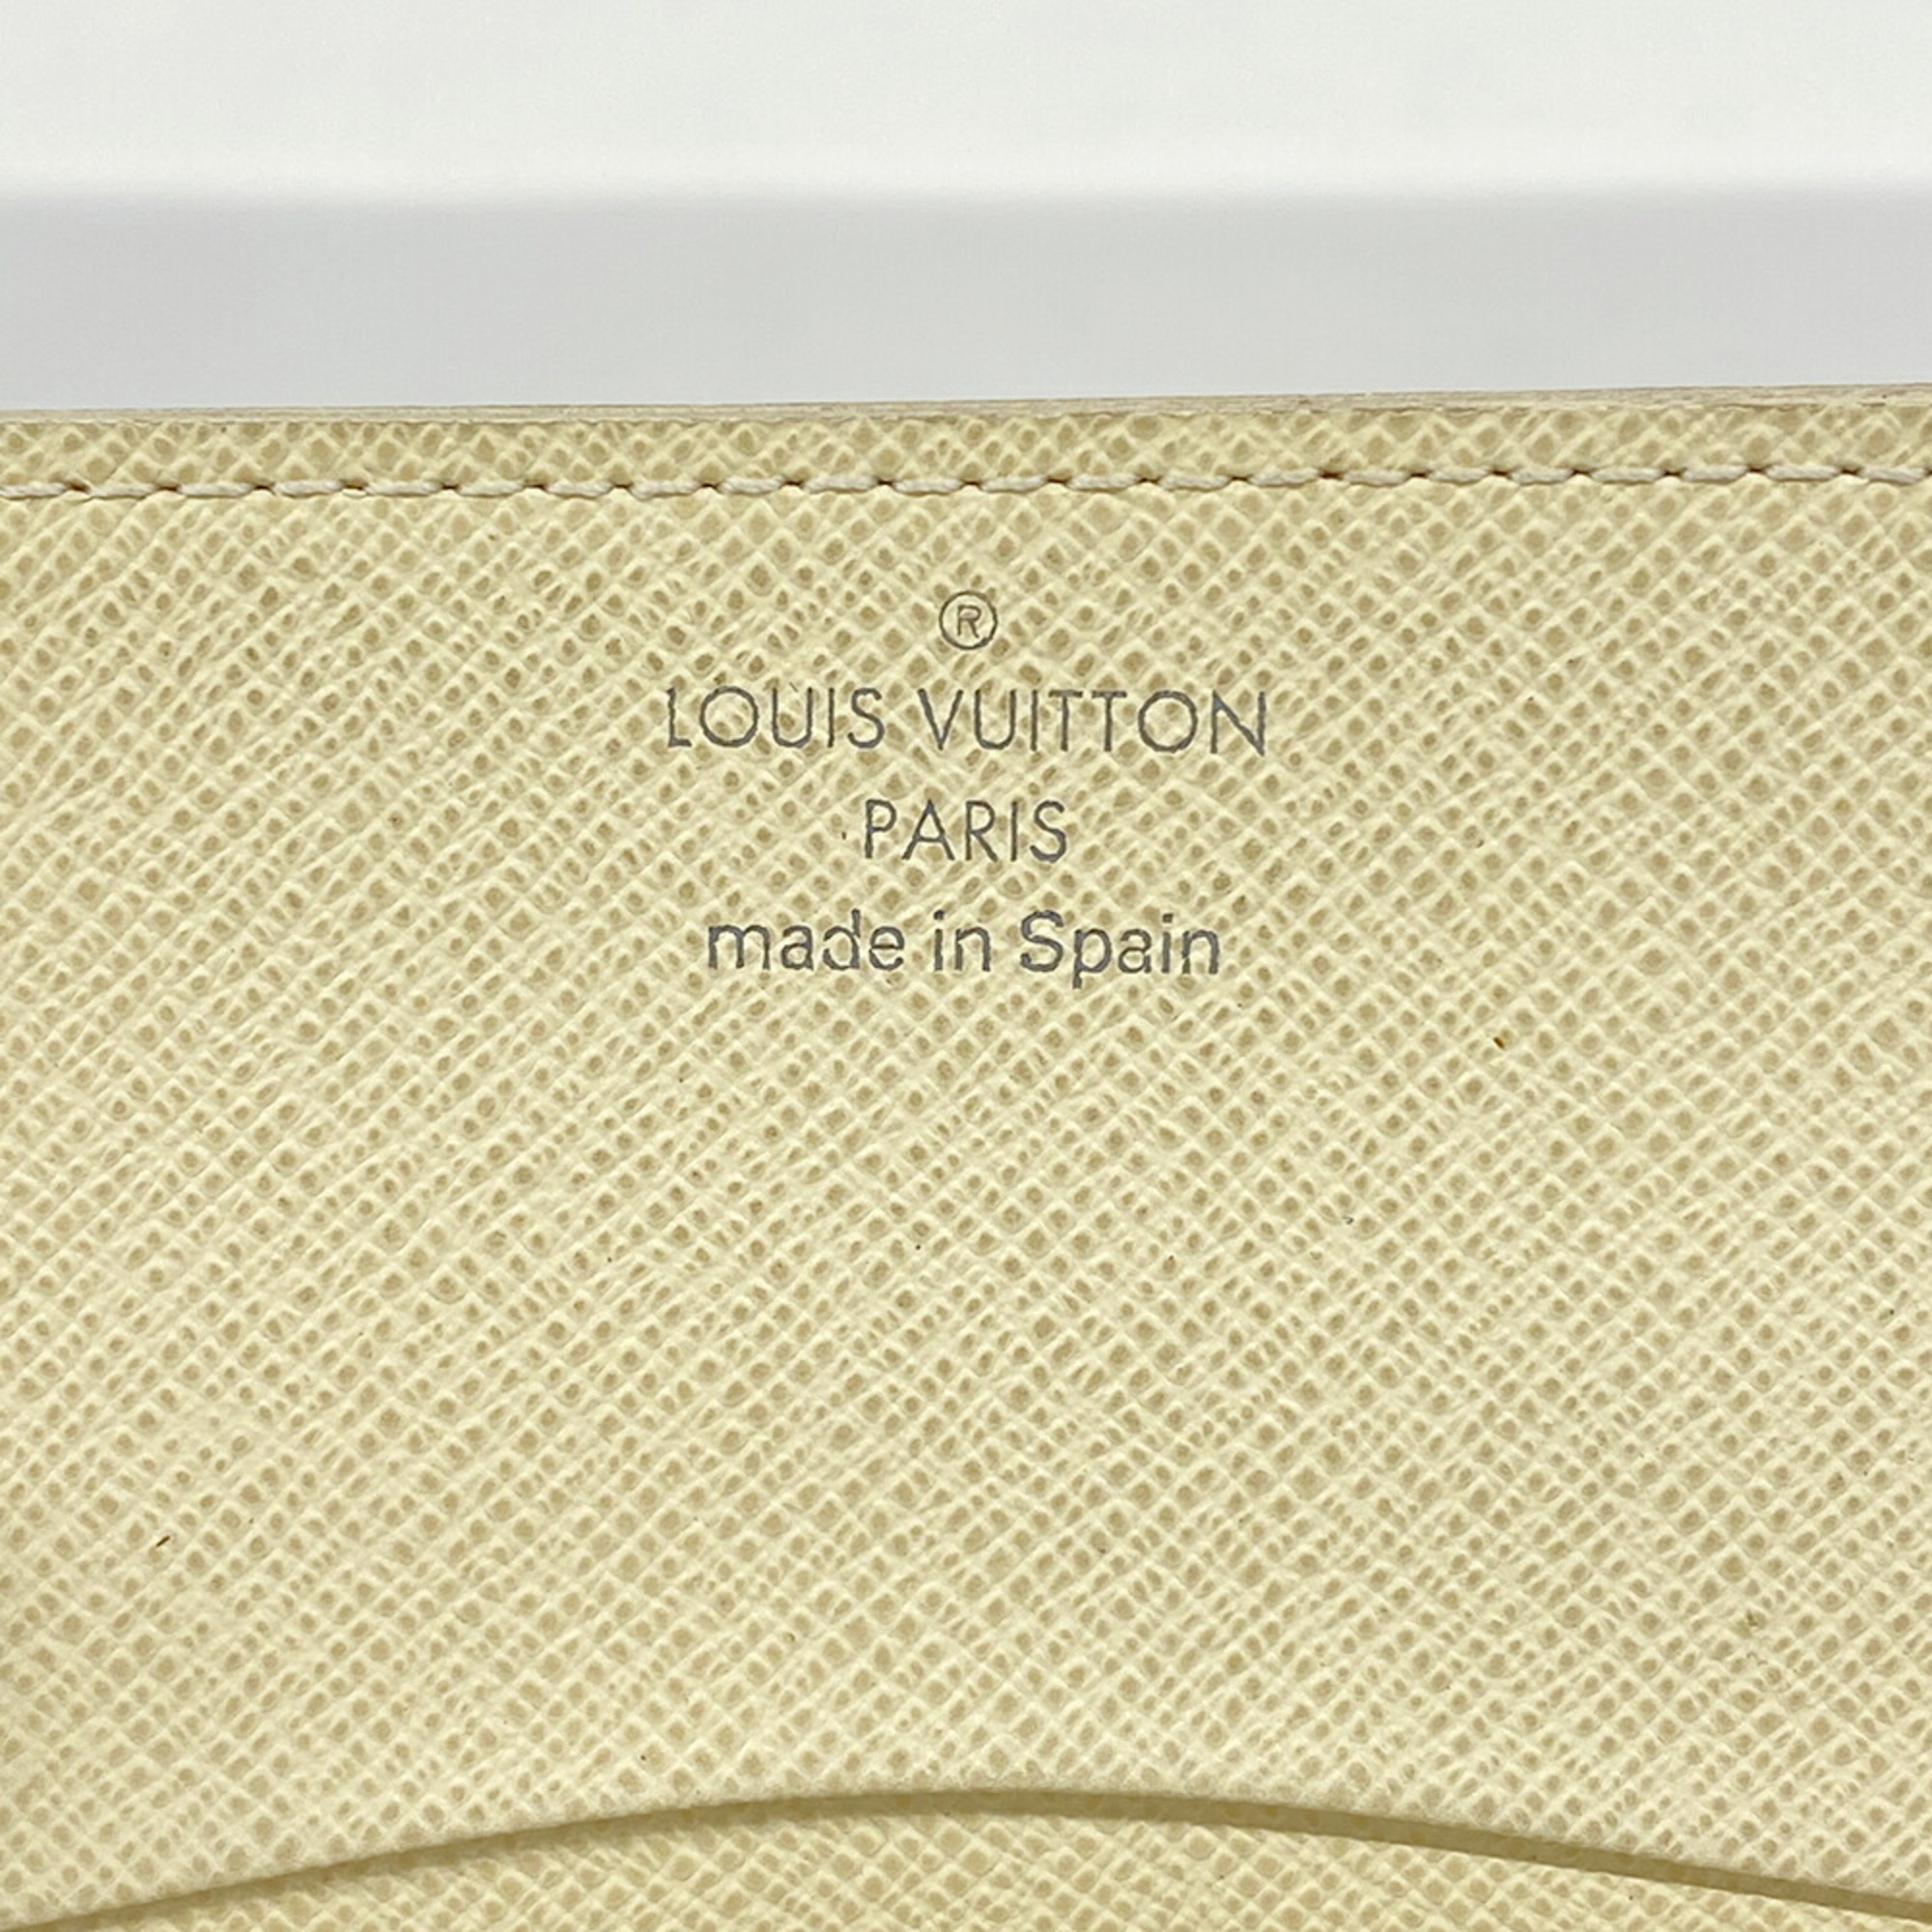 ルイ・ヴィトン(Louis Vuitton) ルイ・ヴィトン 名刺入れ ダミエ・アズール アンヴェロップカルトドゥヴィジット N61746 ホワイトレディース